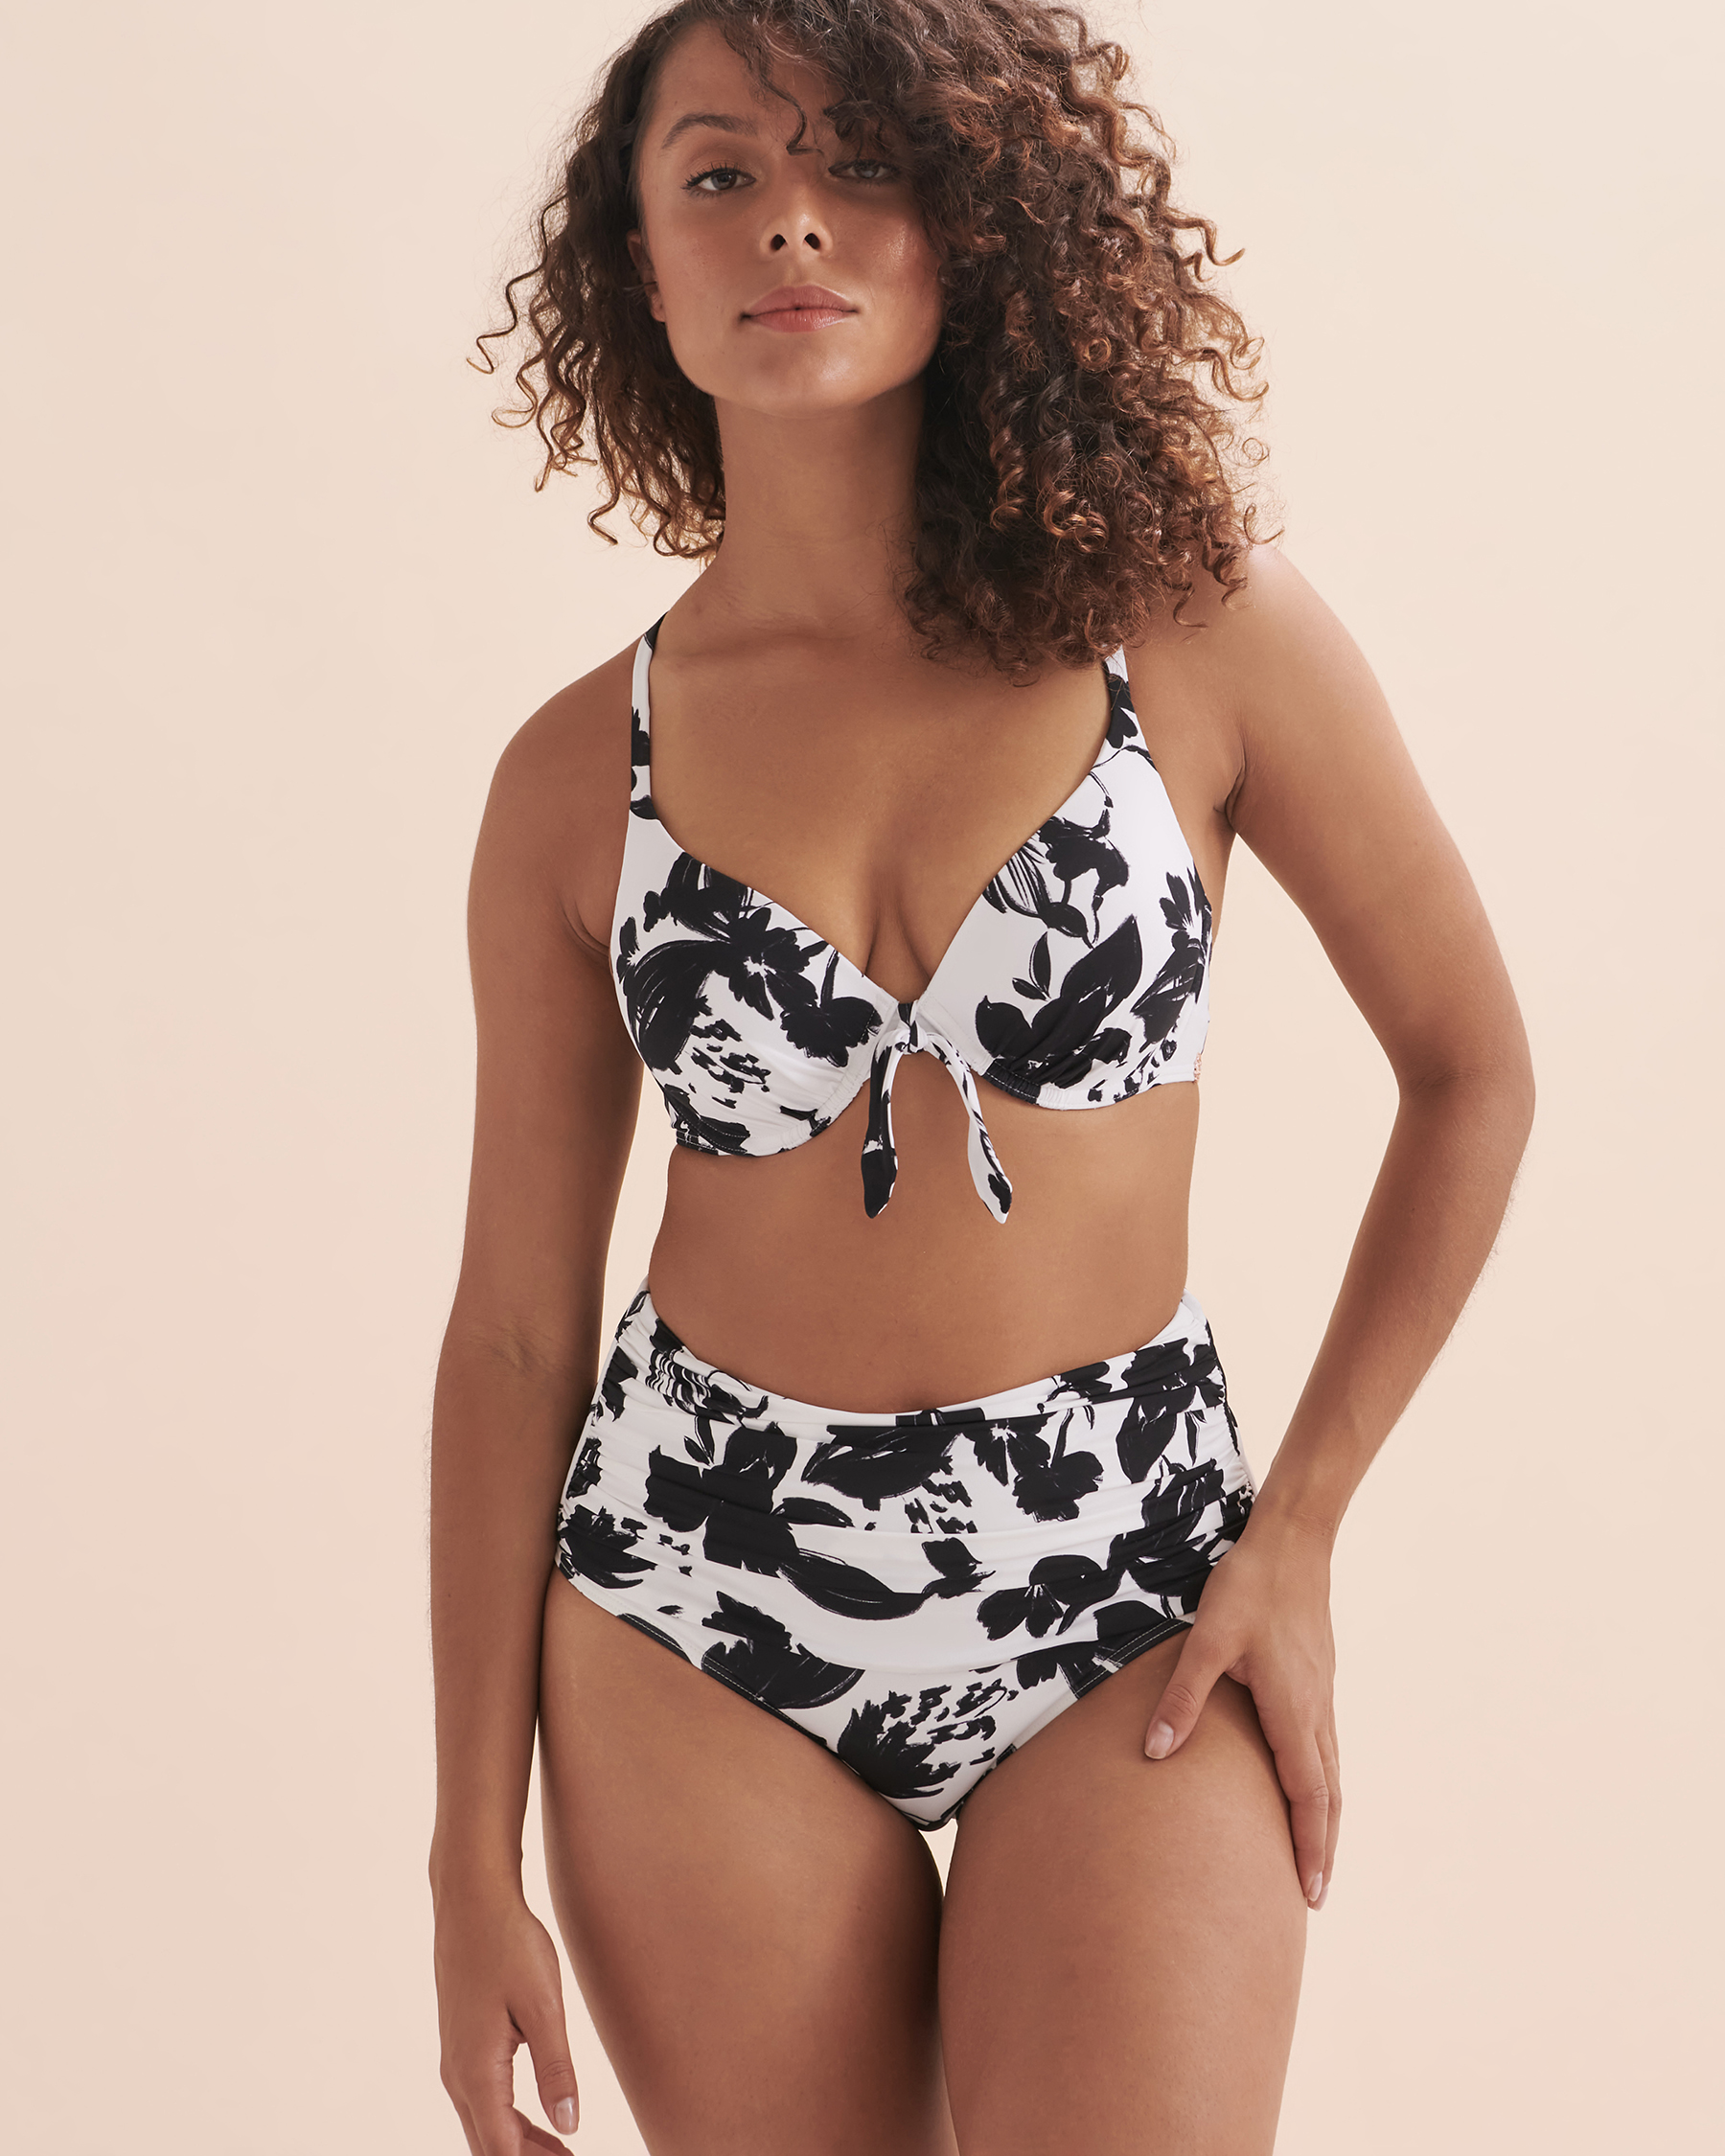 TURQUOISE COUTURE Bas de bikini taille haute Black & White Abstract Floral noir et blanc 01300240 - Voir5